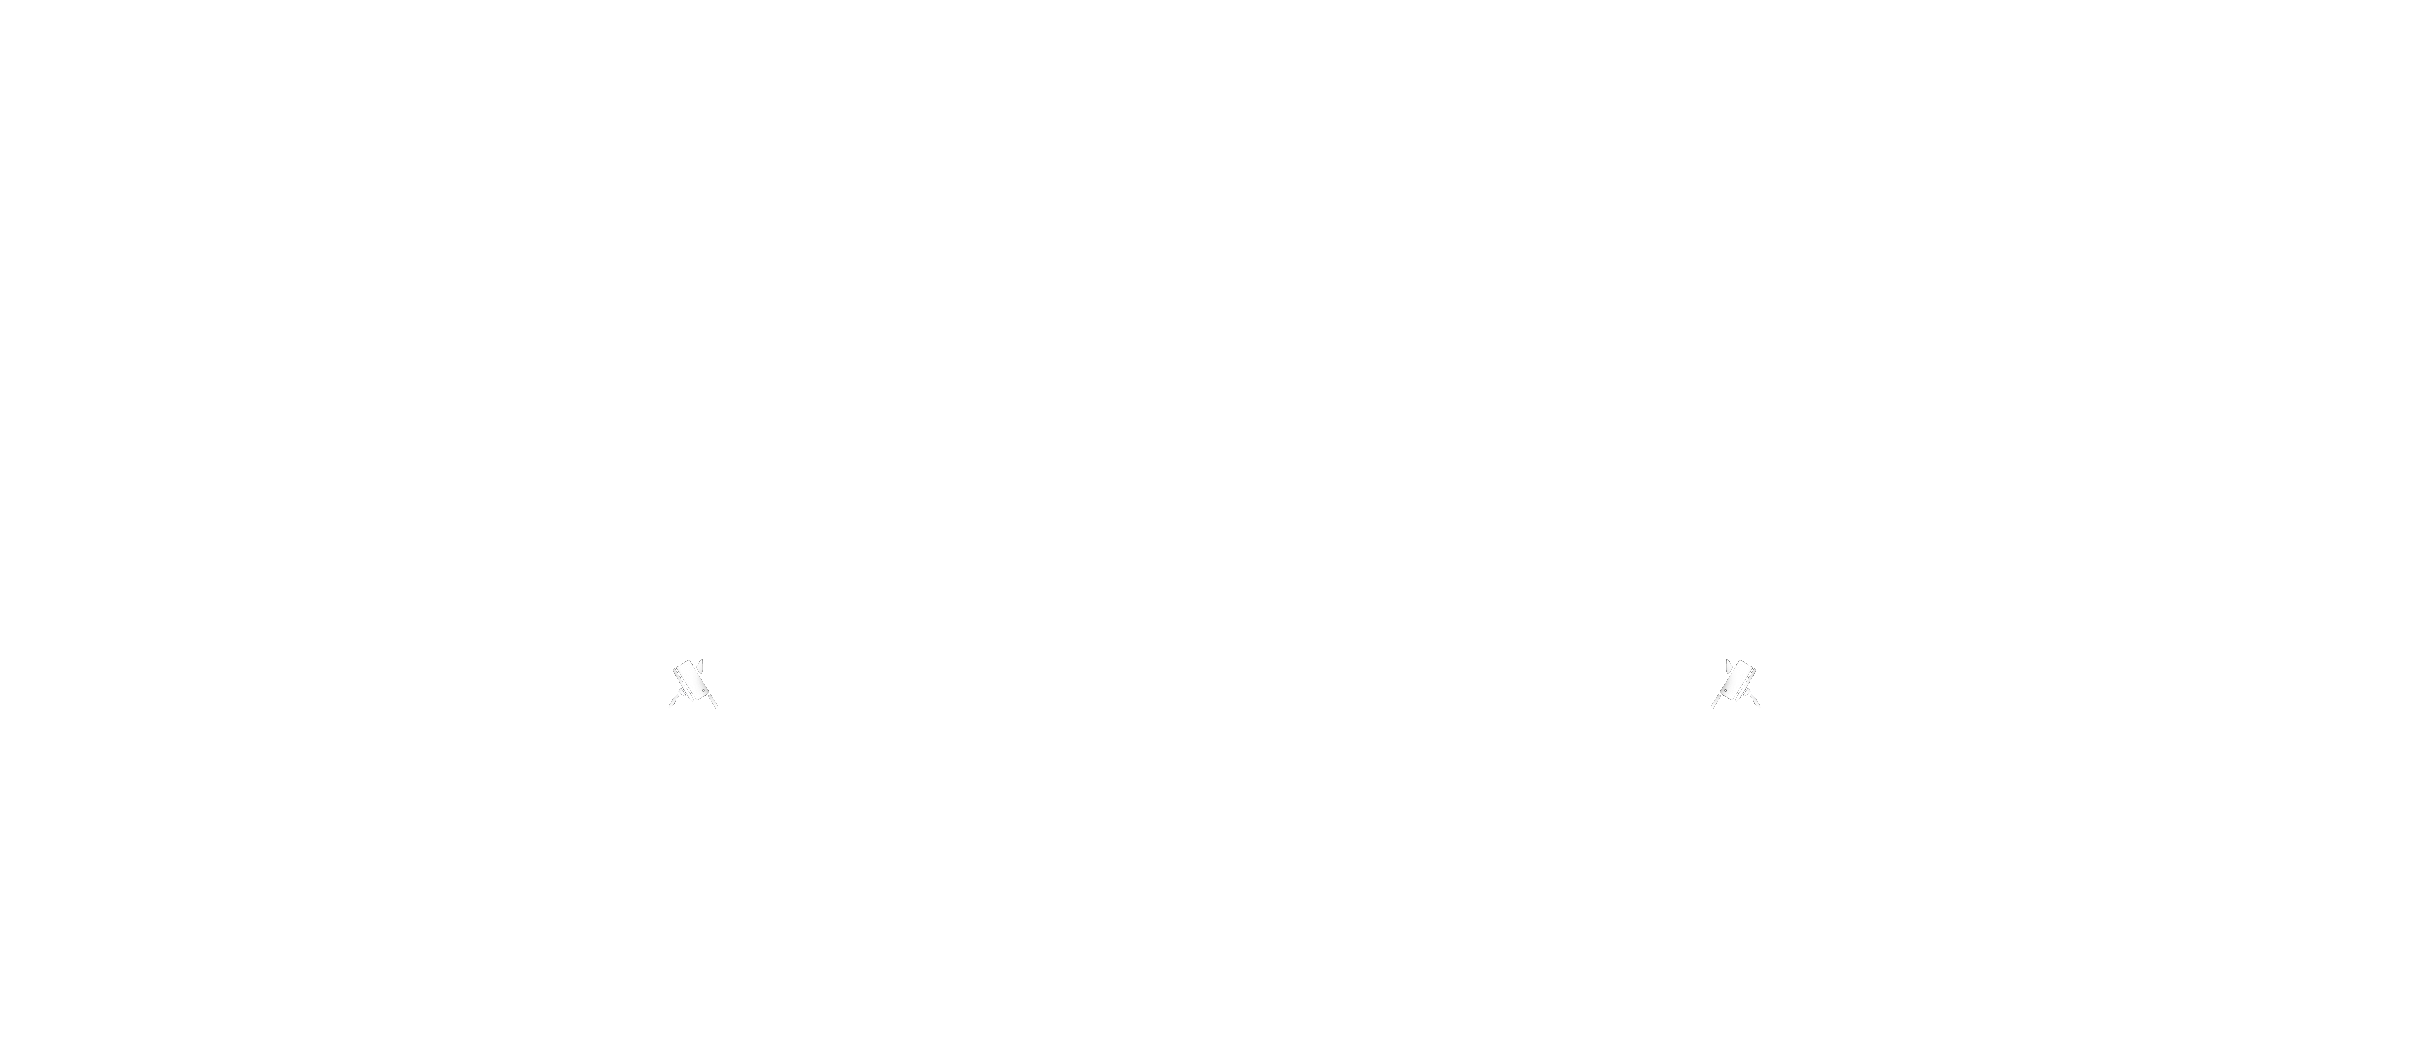 Kucumester – Kistermelők Klubja - Hentesáru, tatár beefsteak bár, delikát és szendvicsező